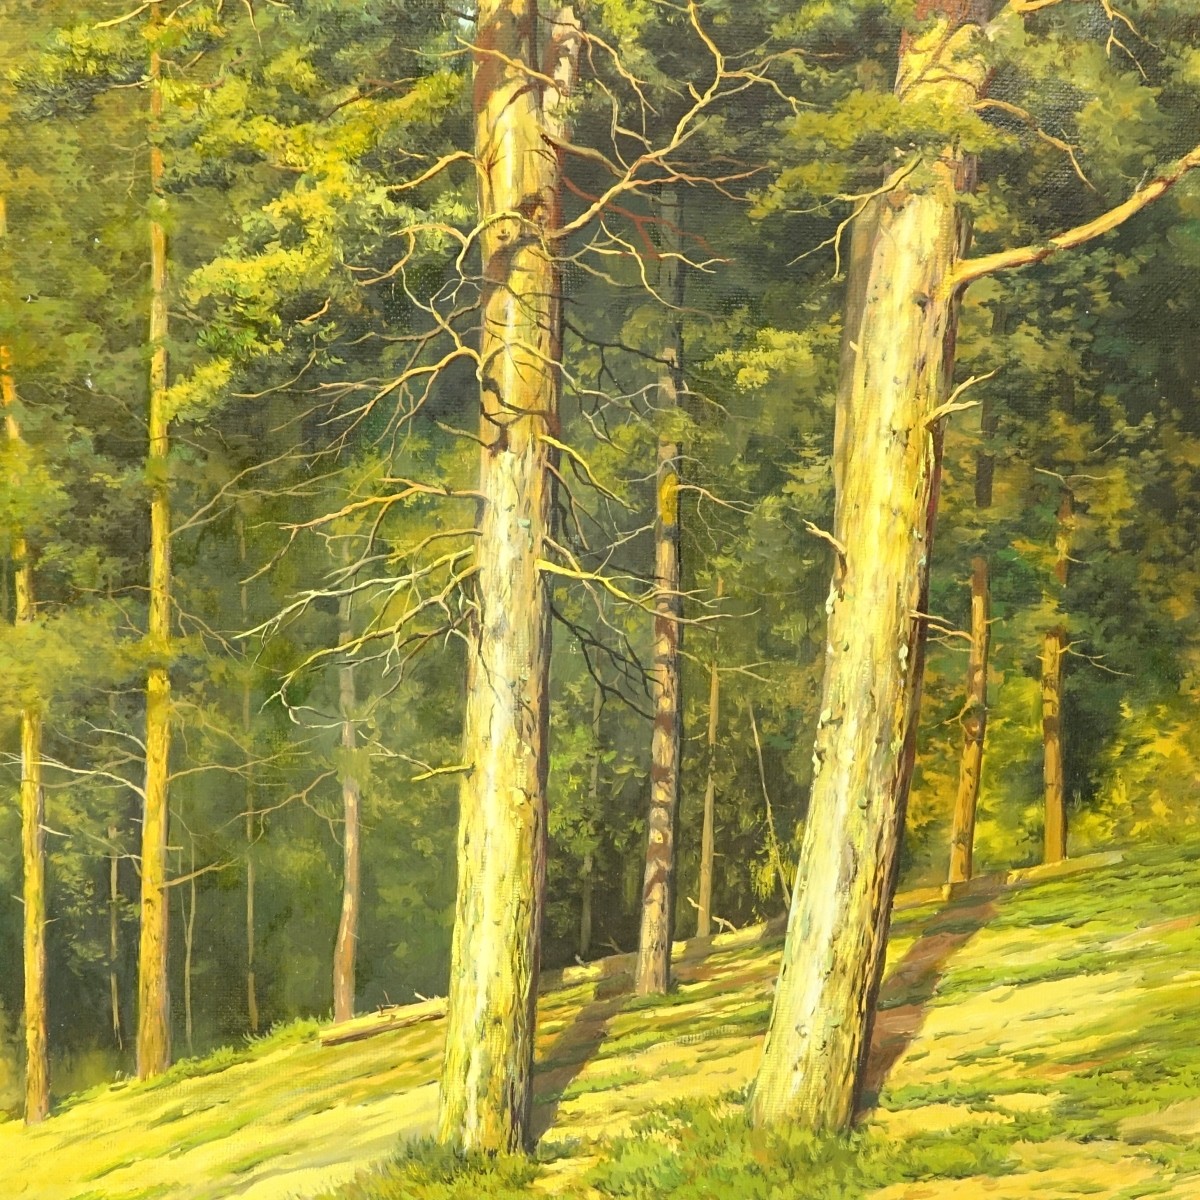 D. Abrosimov, Russian (20C) O/C Forest Landscape